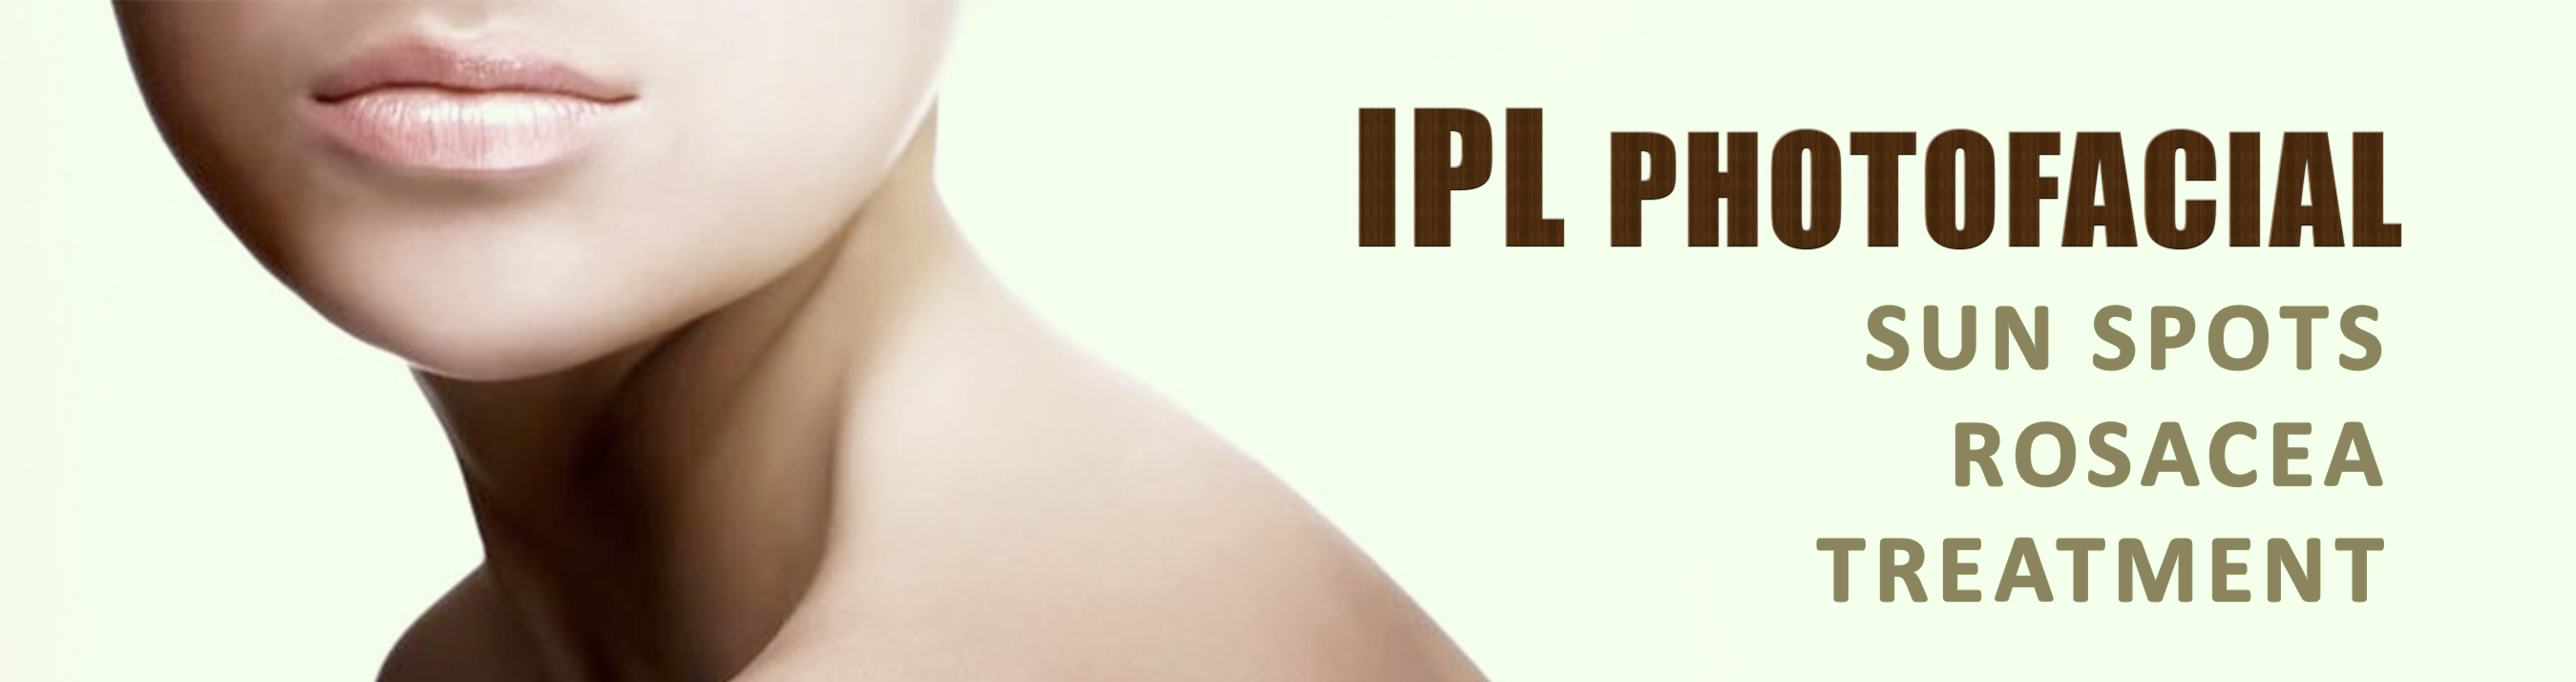 T-IPL